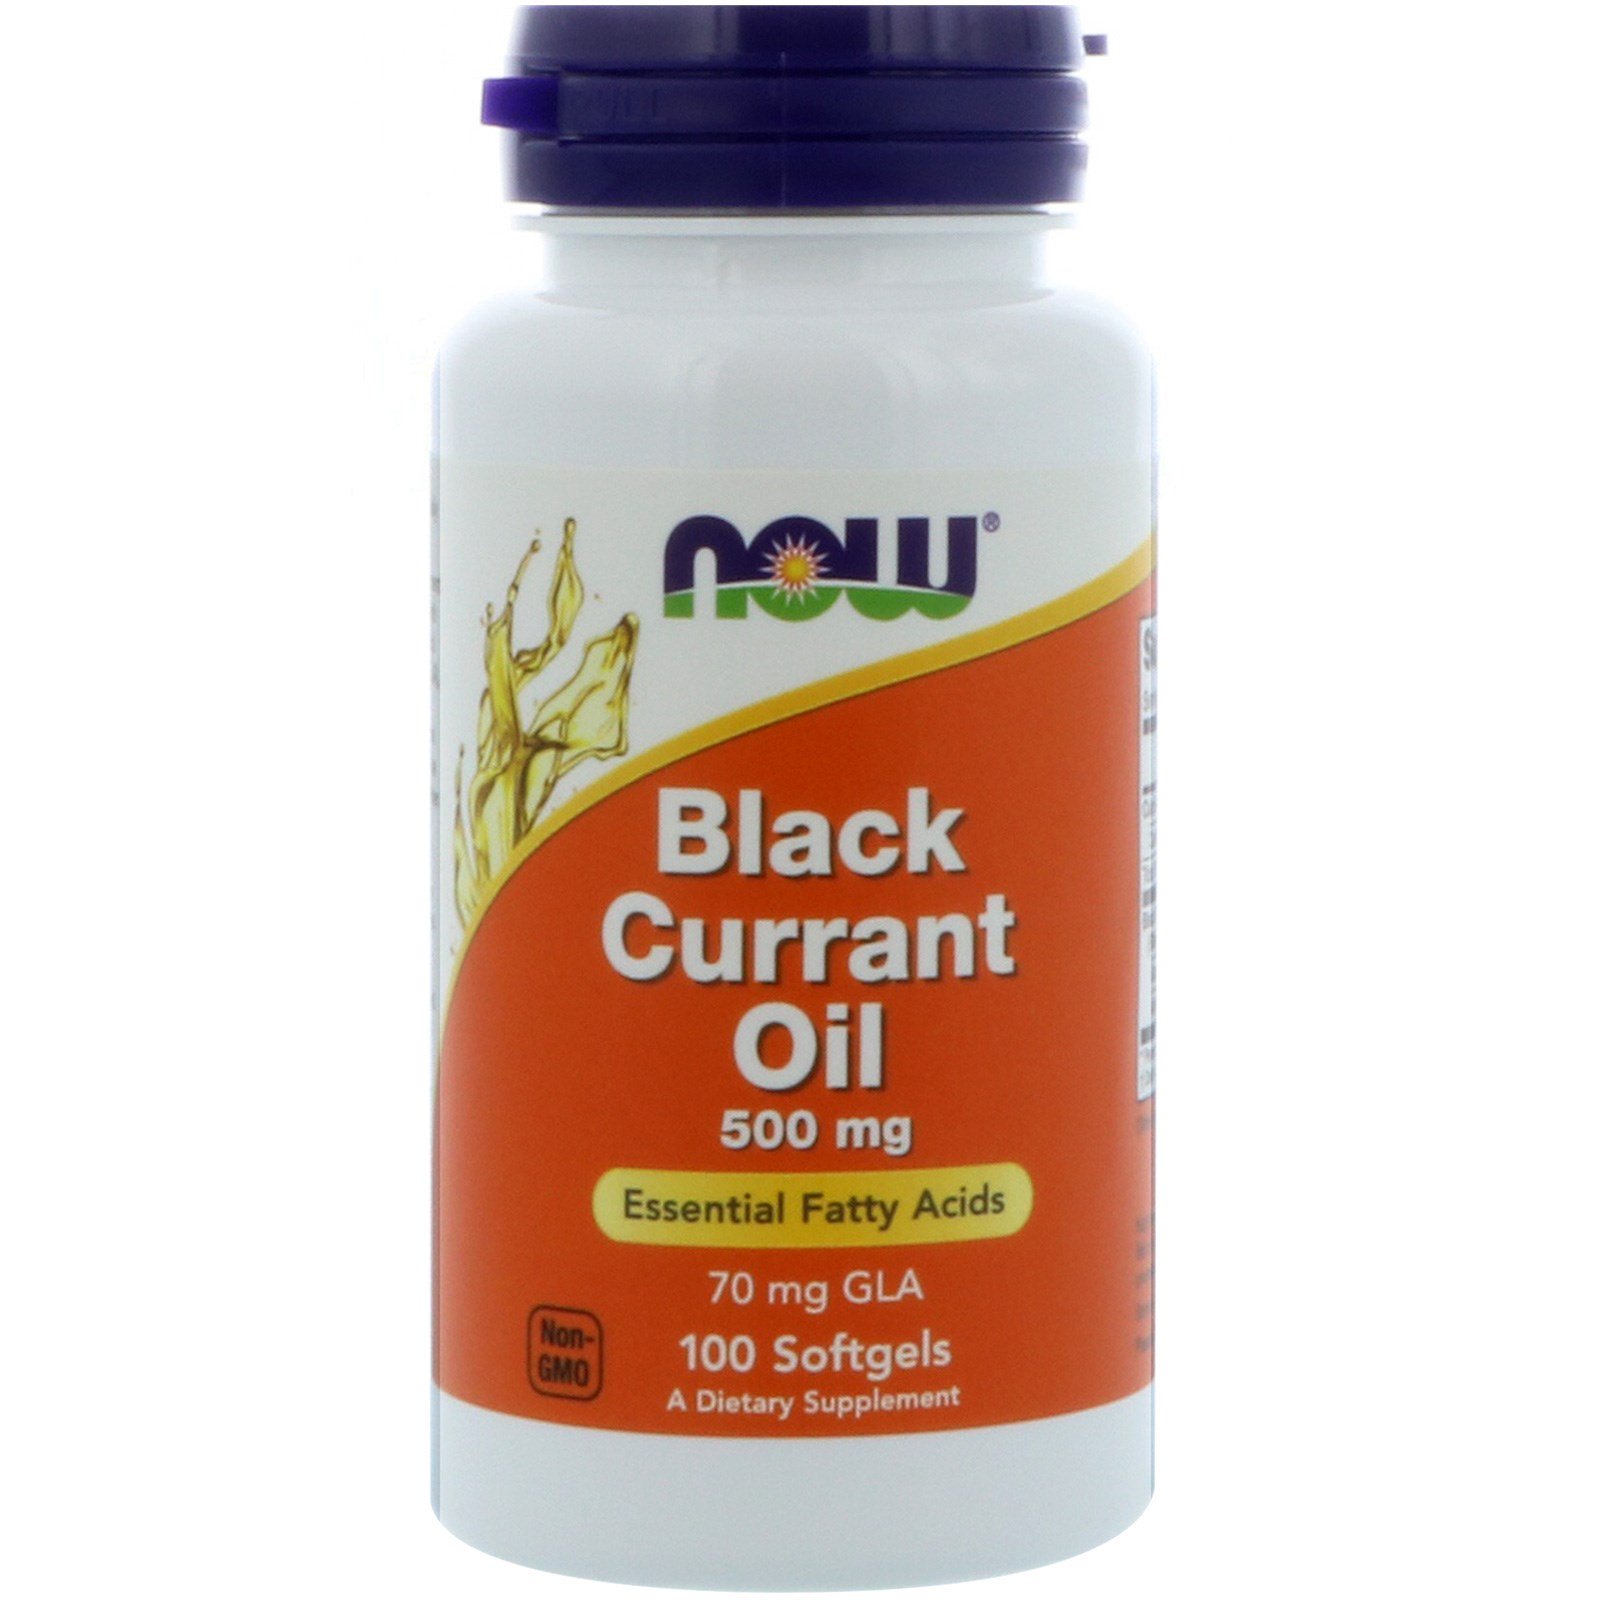 Black Currant Oil, Масло Чёрной Смородины, Гамма-Линоленовая кислота 500 мг - 100 капсул